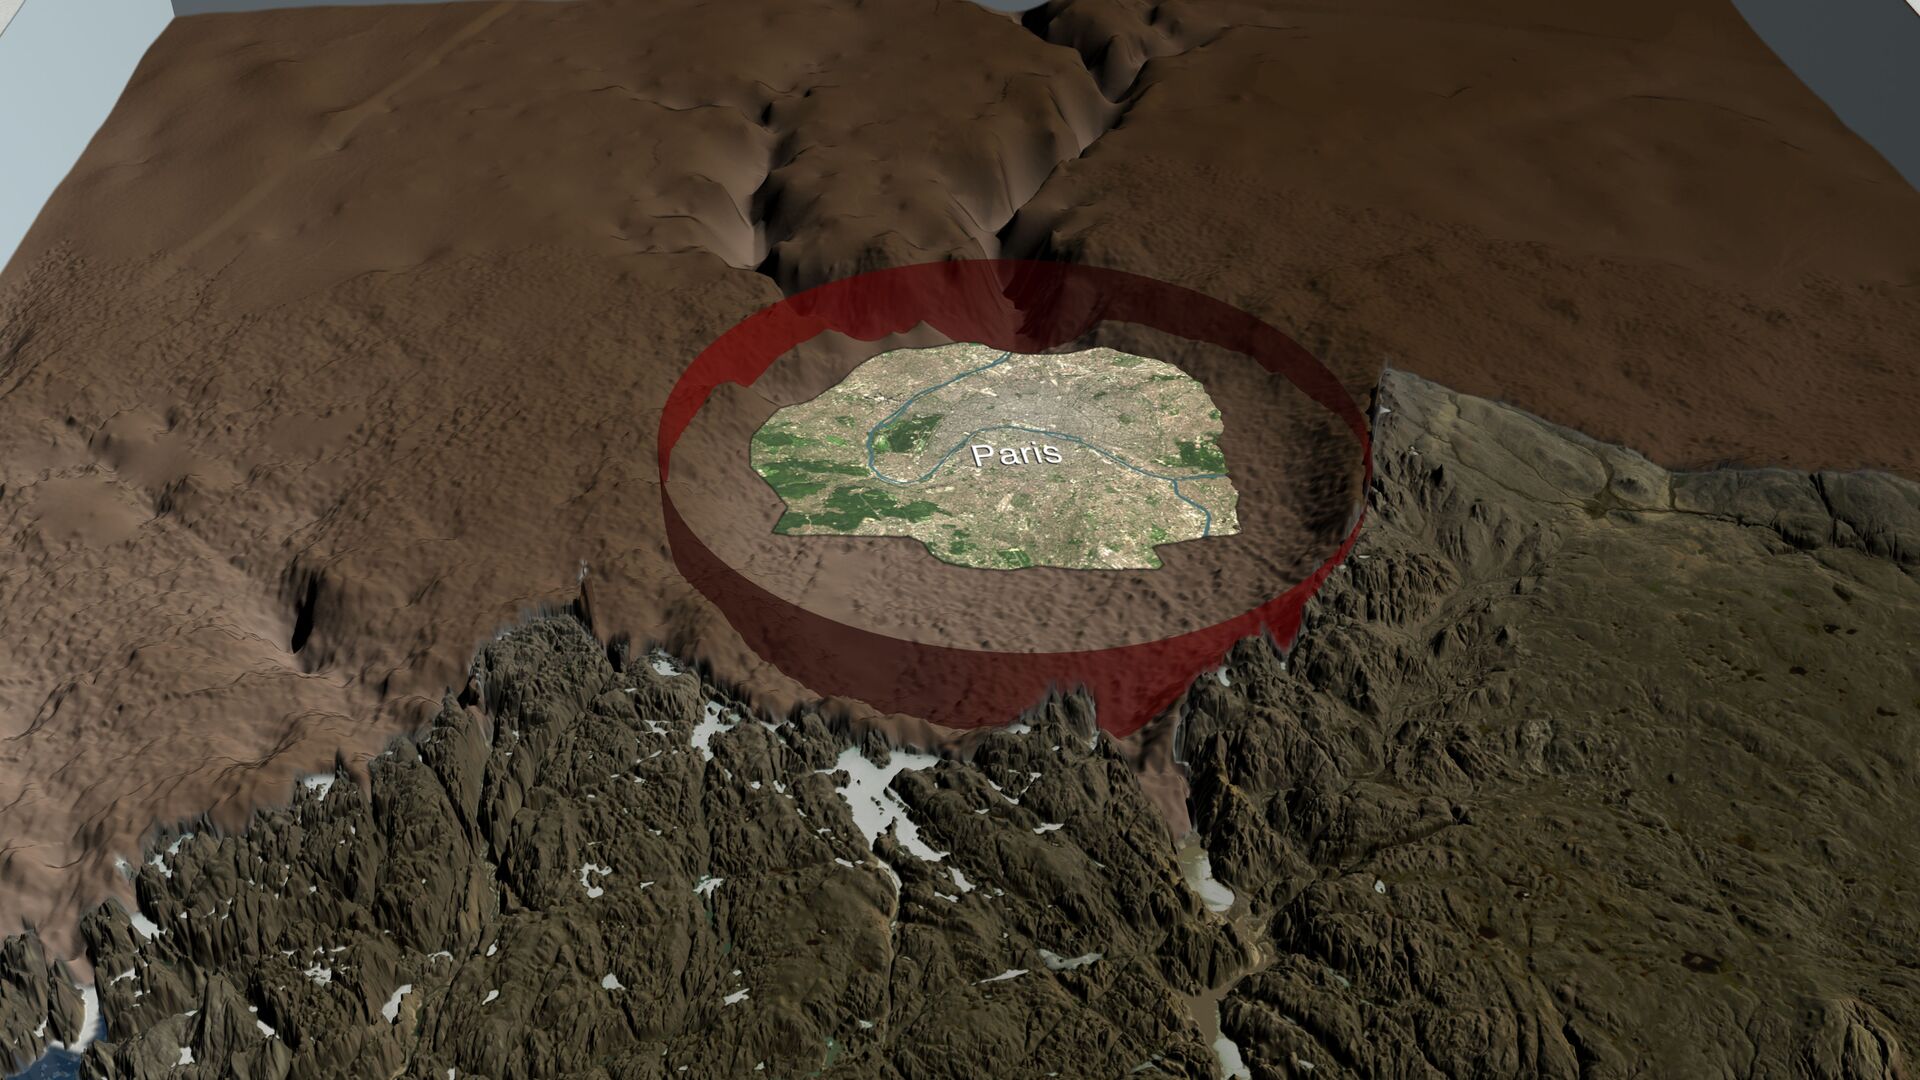 Revelados detalhes de queda de asteroide que deixou cratera gigante na Groenlândia há 11.700 anos - Sputnik Brasil, 1920, 04.06.2021